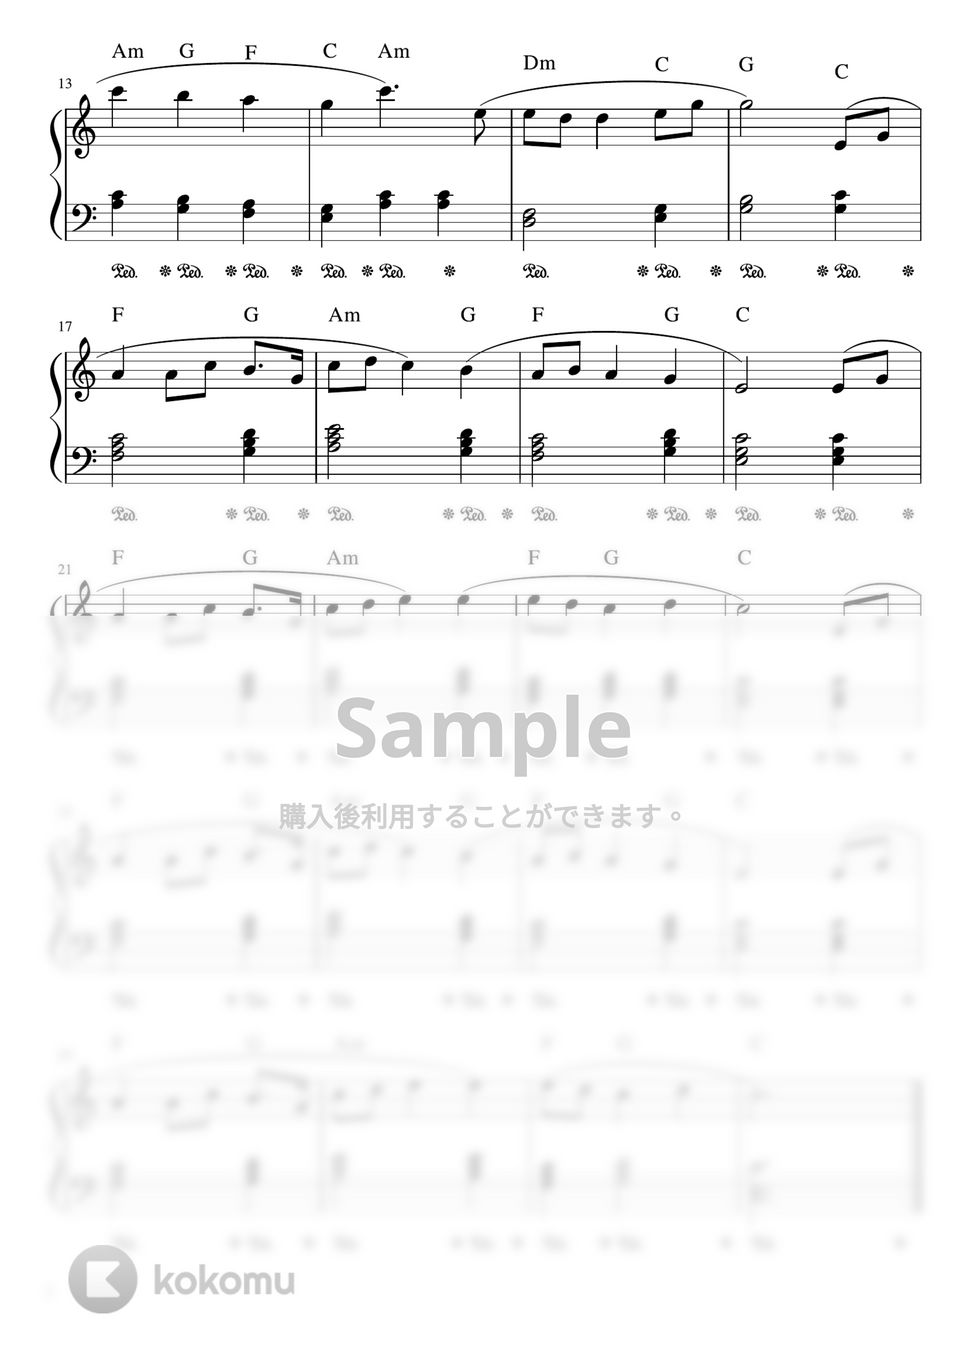 G.ホルスト - 惑星より「木星」 (C・ピアノソロ初級) by pfkaori